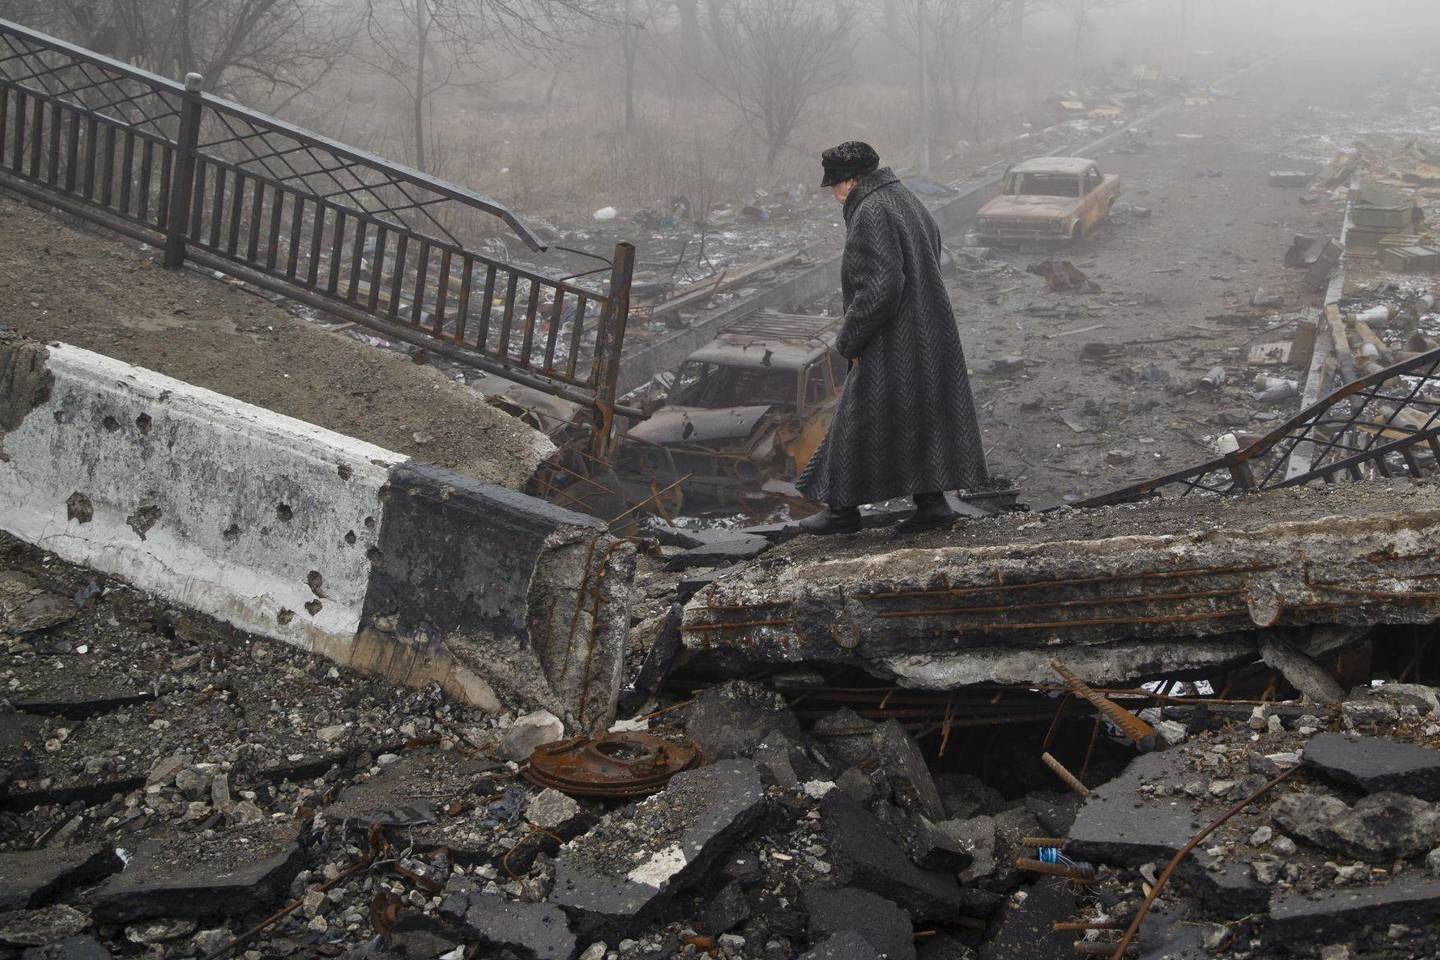 Rytų Ukraina dar ilgai neišsilaižys karo žaizdų.<br>AP nuotr. iš archyvo